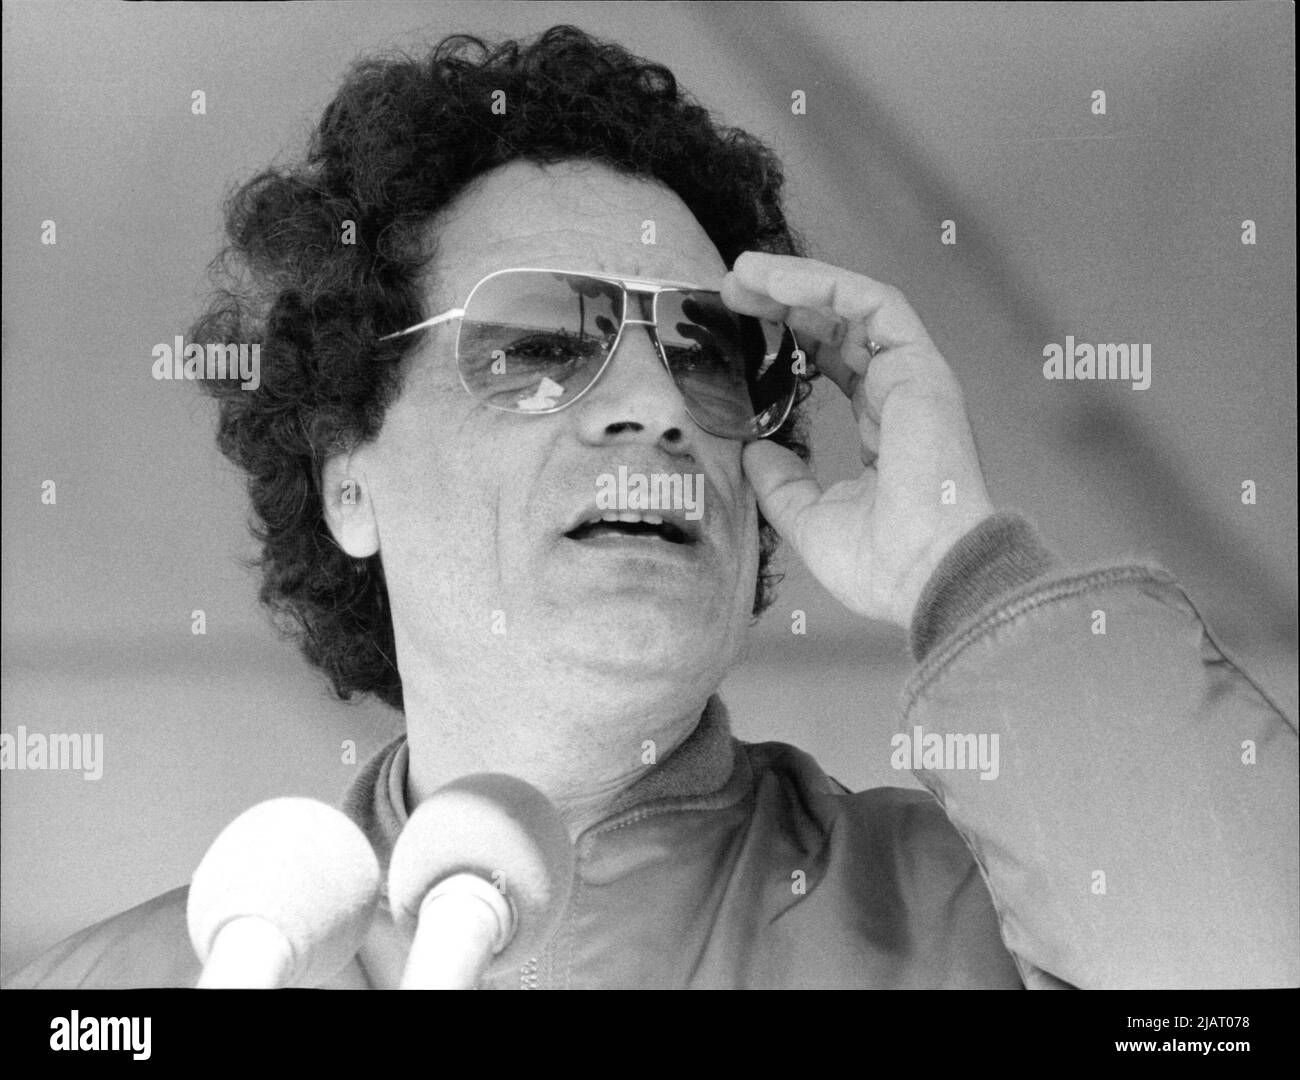 Muammar al-Gaddafi, das Staatsoberhaupt von Libyen von 1969 bis 2011. Stock Photo